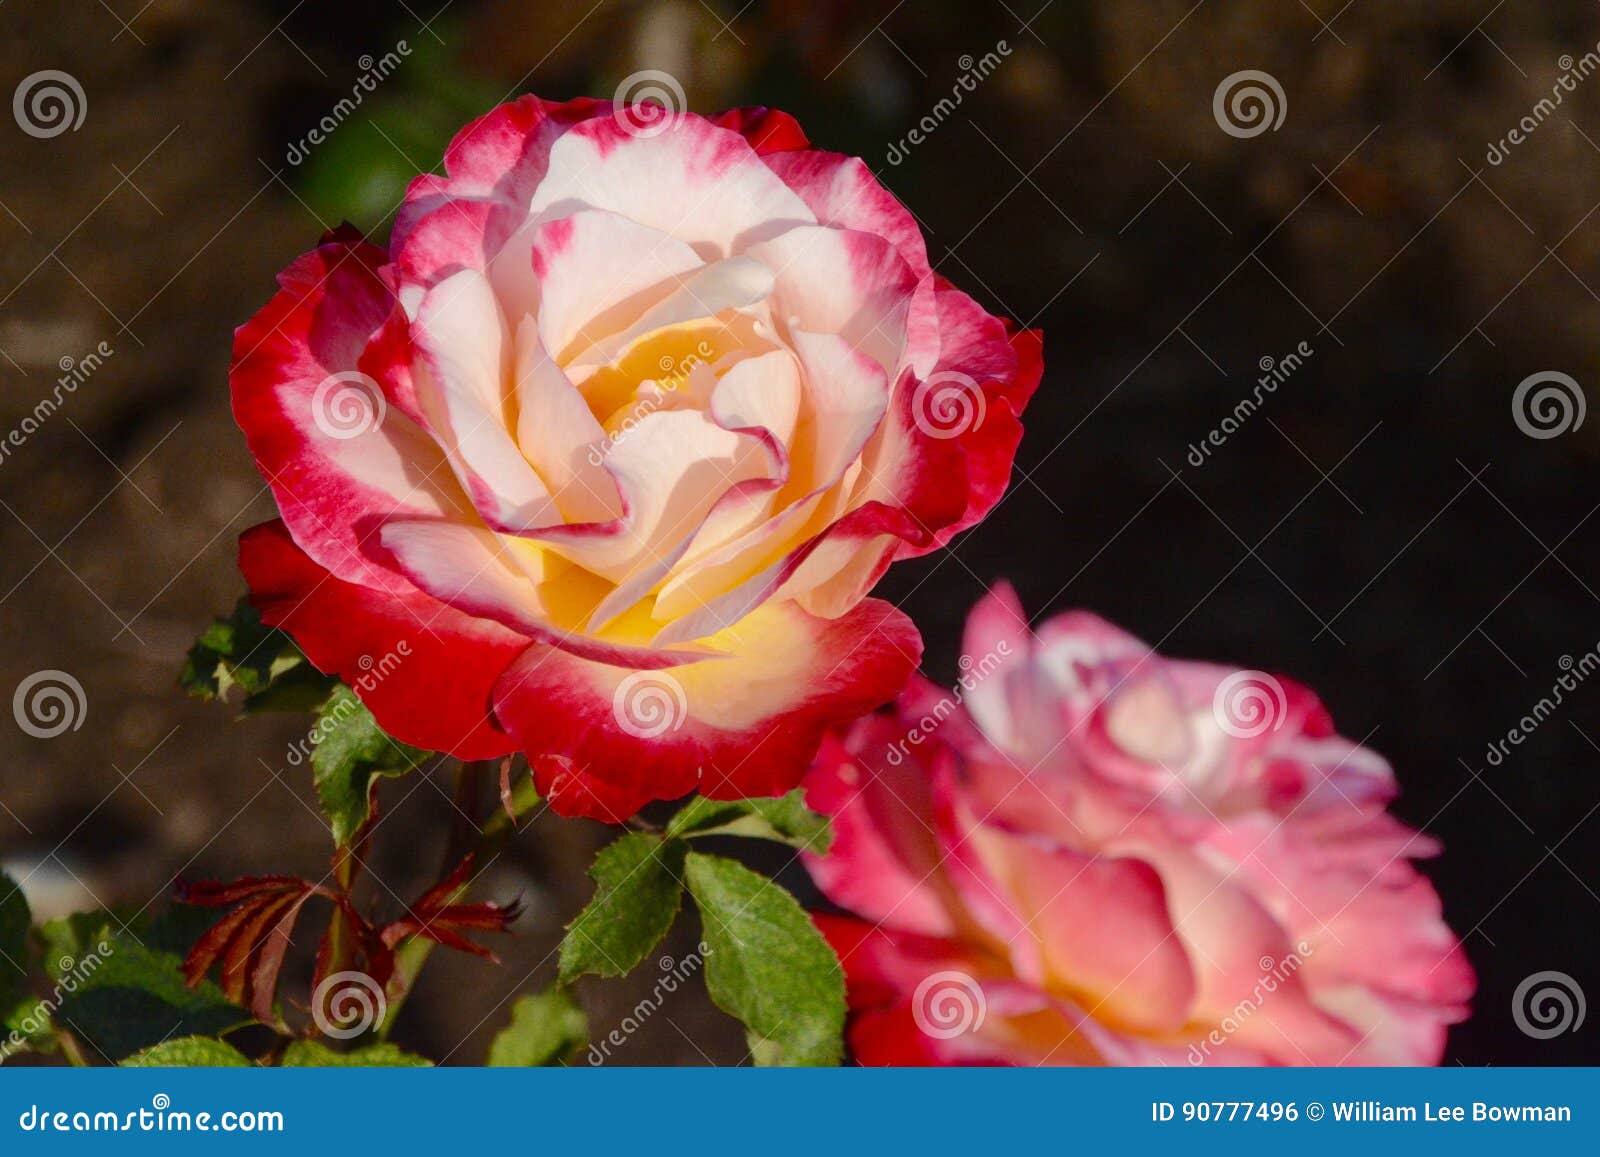 Rote U Weisse Rose Stockfoto Bild Von Blumenblatter 90777496